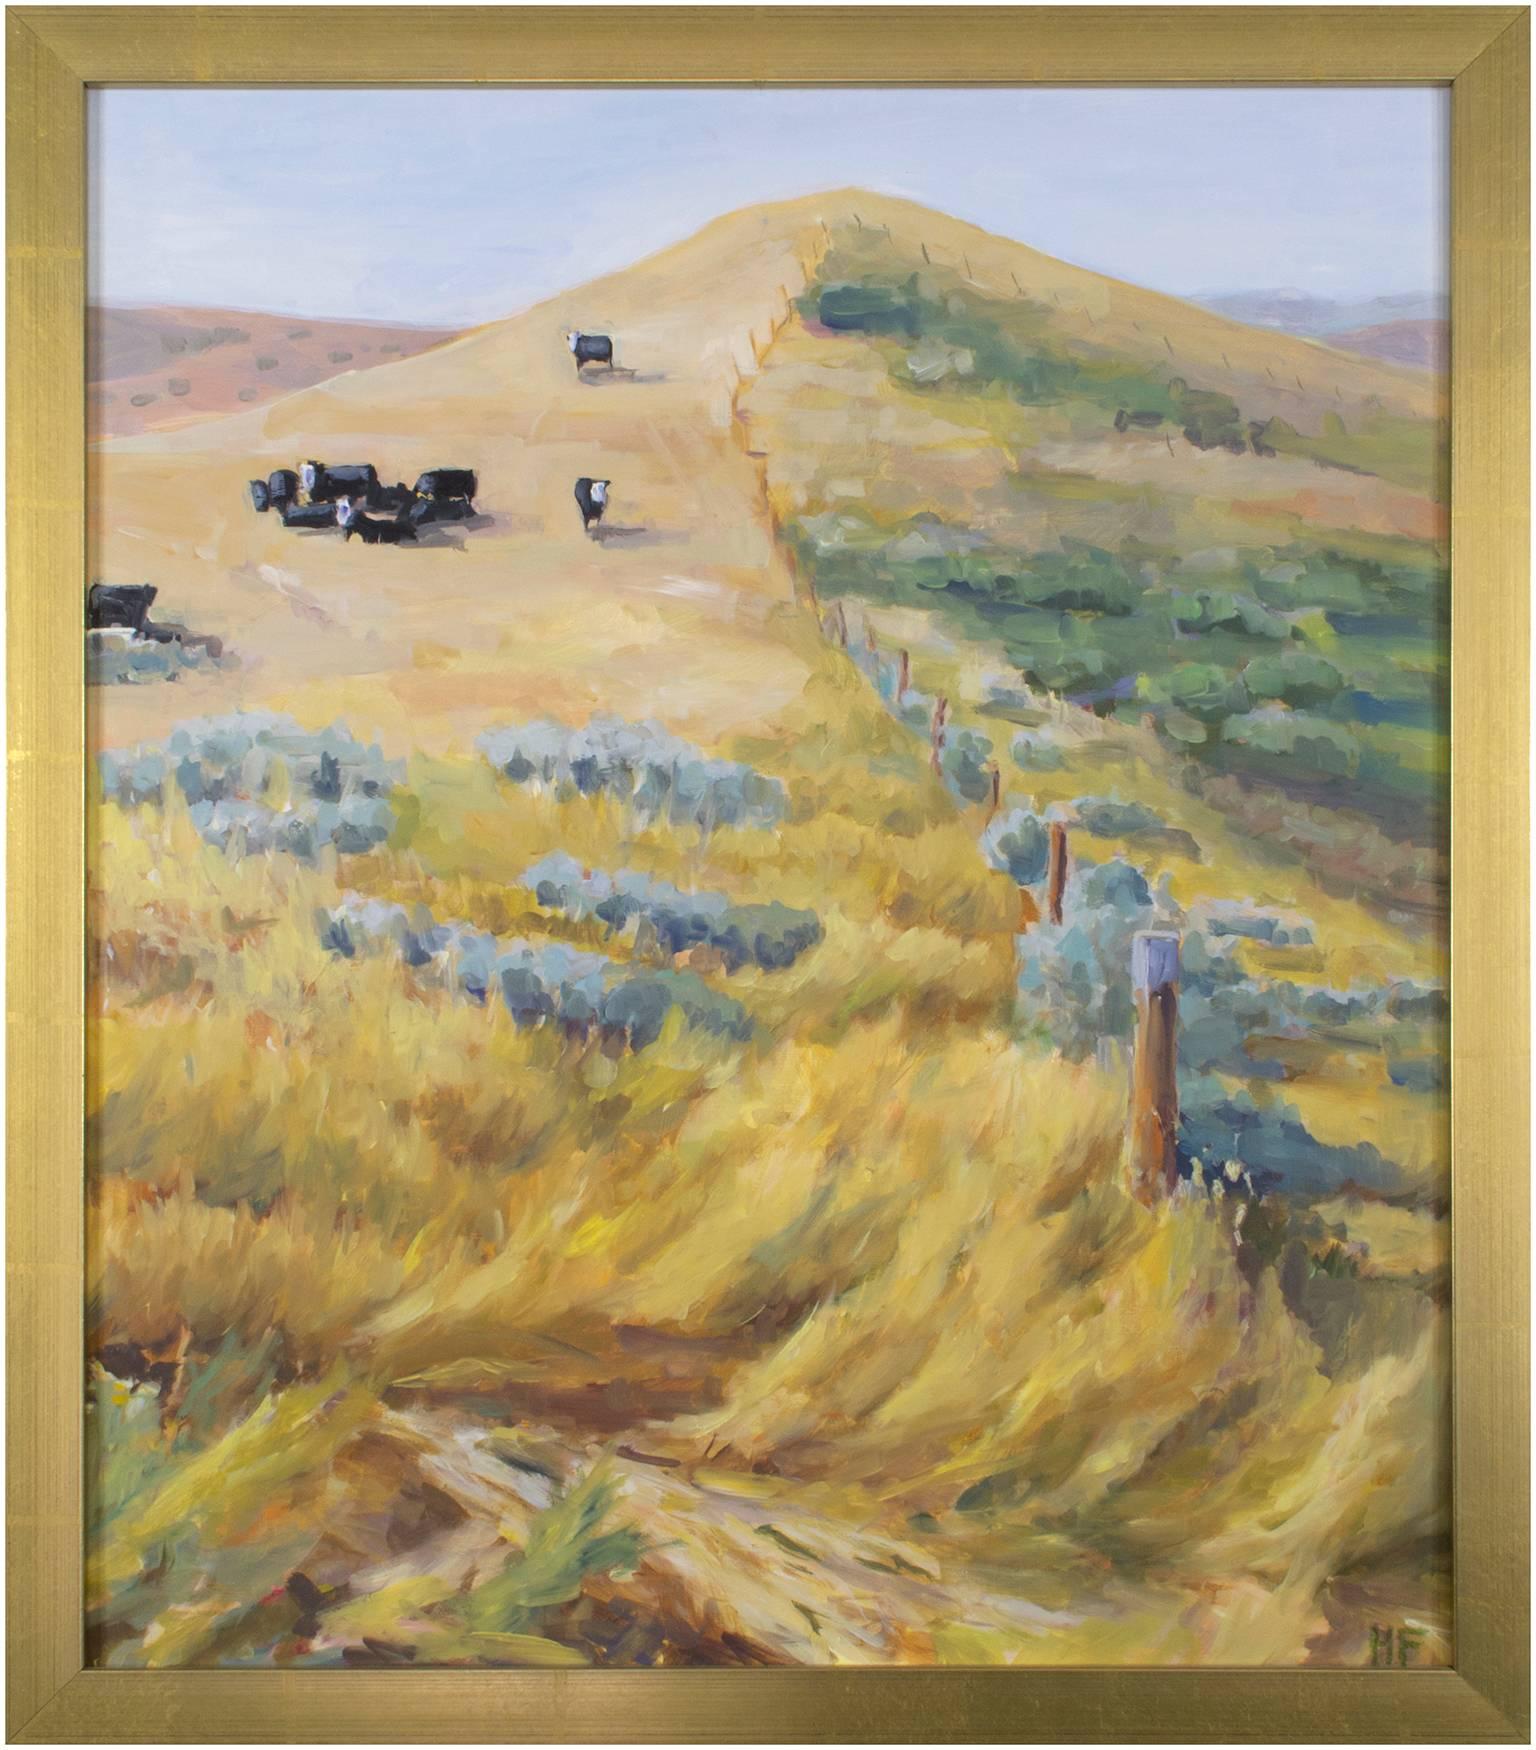 "Sheridan Herd" ist ein Original-Ölgemälde auf Masonit von Heather Foster. Der Künstler hat das Werk unten rechts paraphiert. Dieses Gemälde zeigt eine Kuhherde auf einer gelben, hügeligen Wiese. 

24 1/8" x 20 1/8" Kunst

Die Malerin Heather Foster